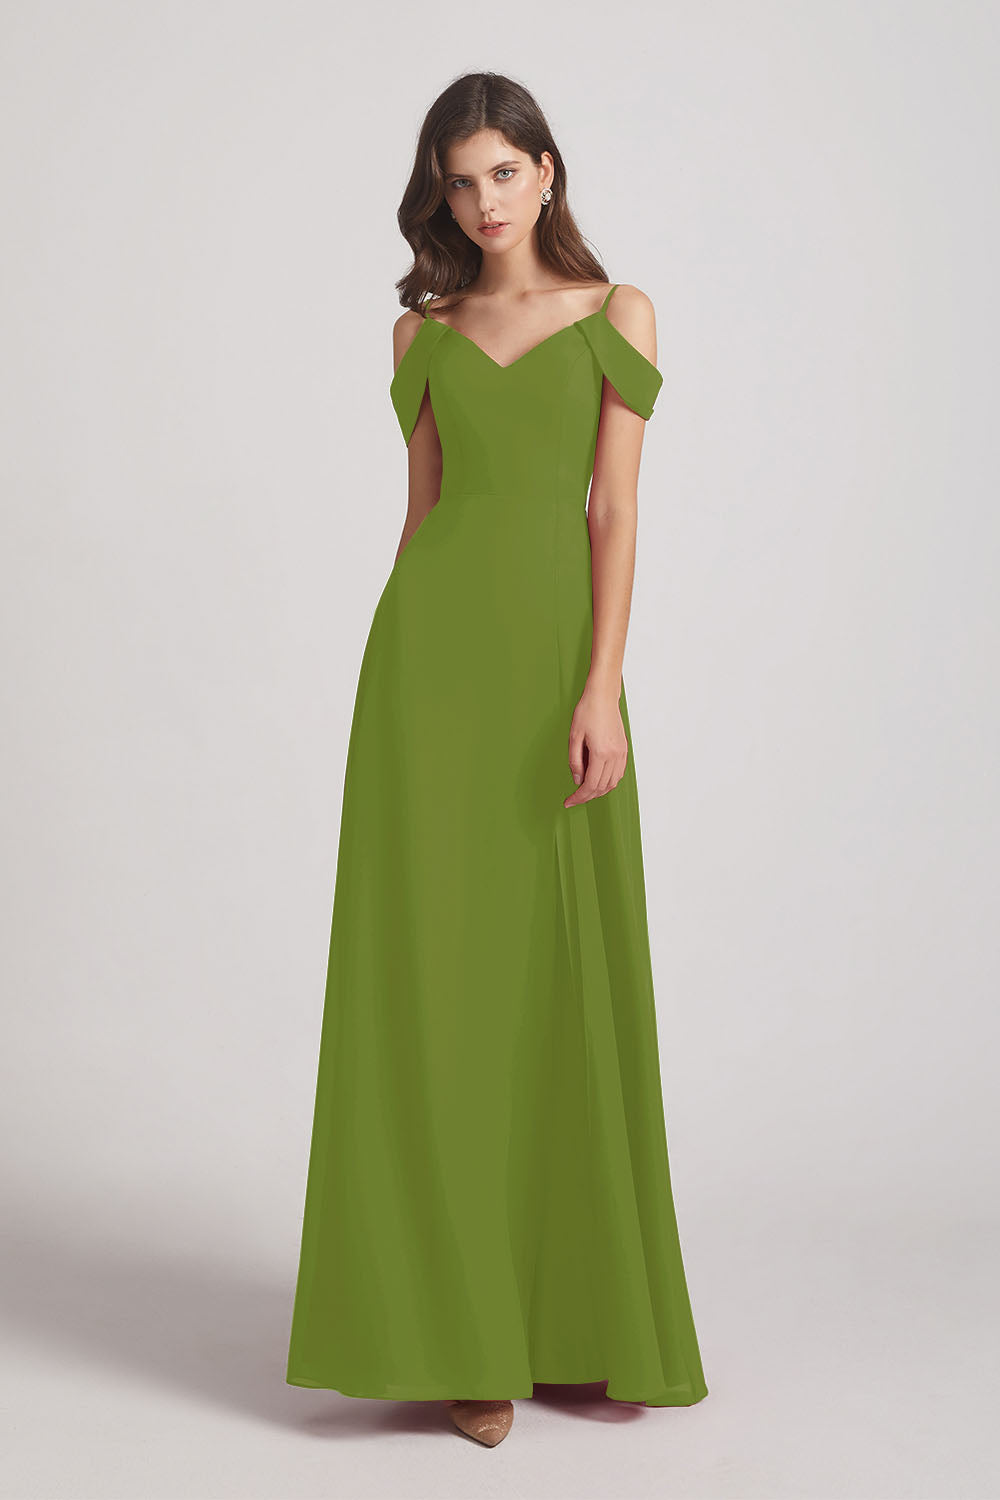 Alfa Bridal Olive Green Chiffon Cold Shoulder V-Neck Bridesmaid Dresses with Slit (AF0093)